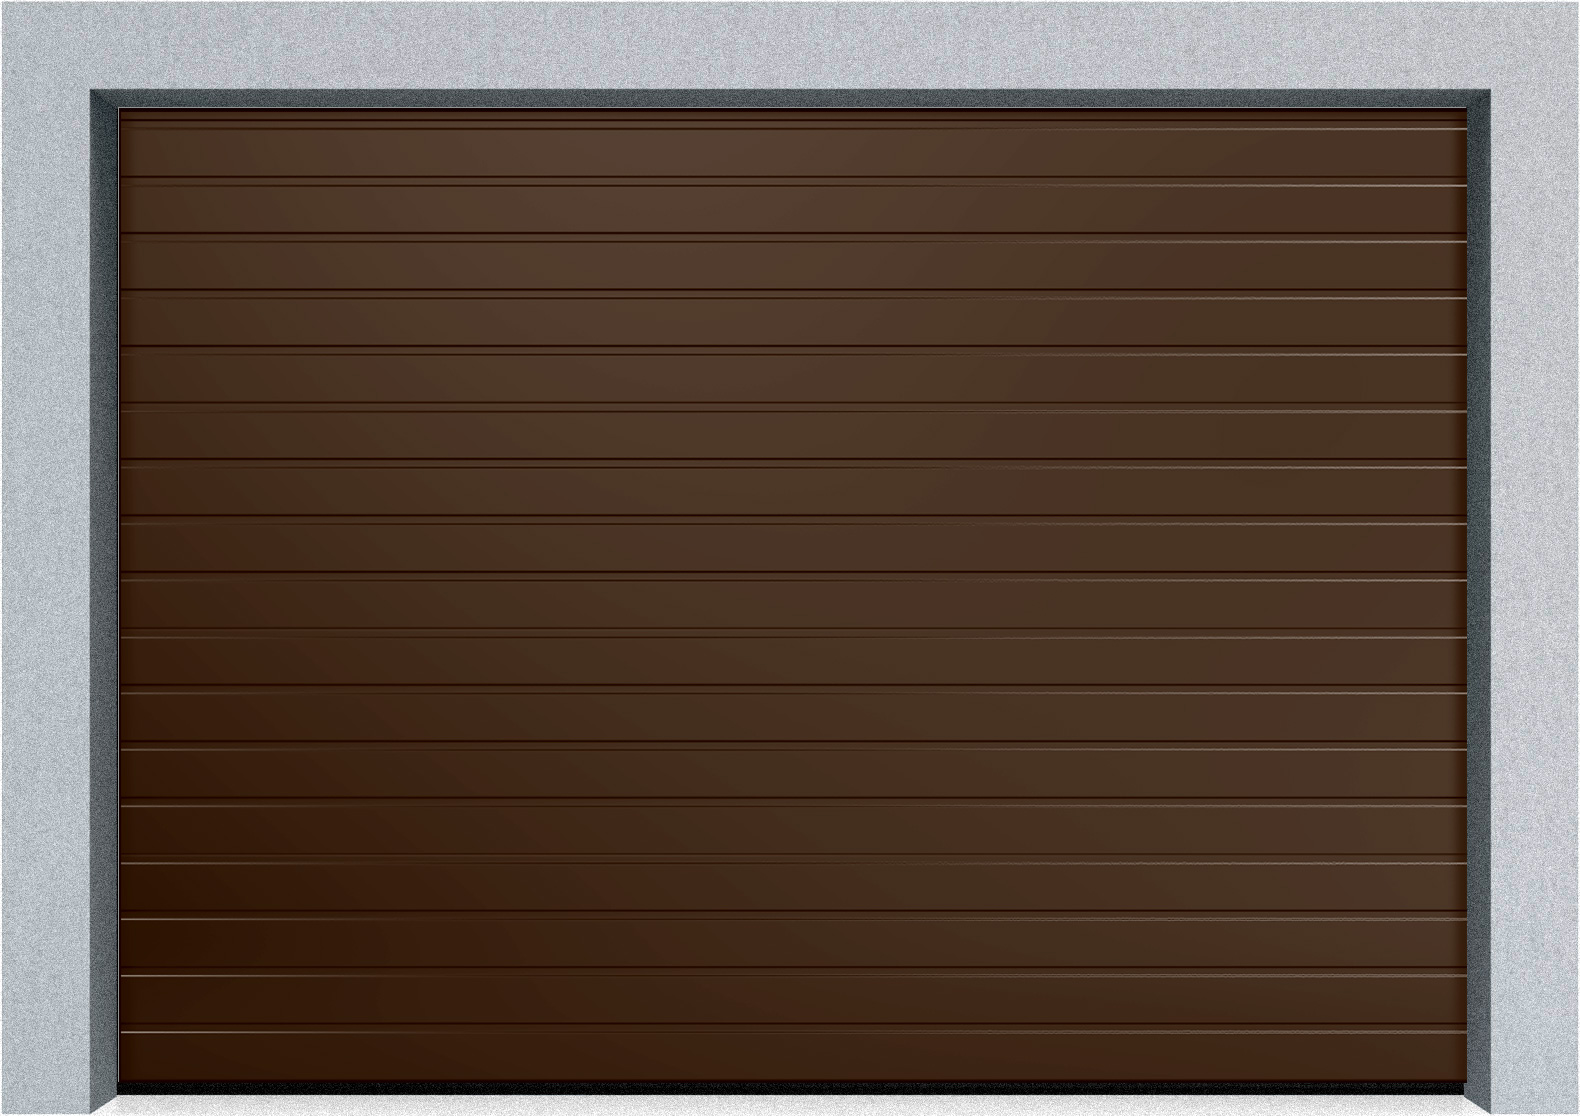  Автоматические секционные гаражные ворота DoorHan RSD02 4100х2600 S-гофр, M-гофр, Микроволна стандартные цвета, фото 2 